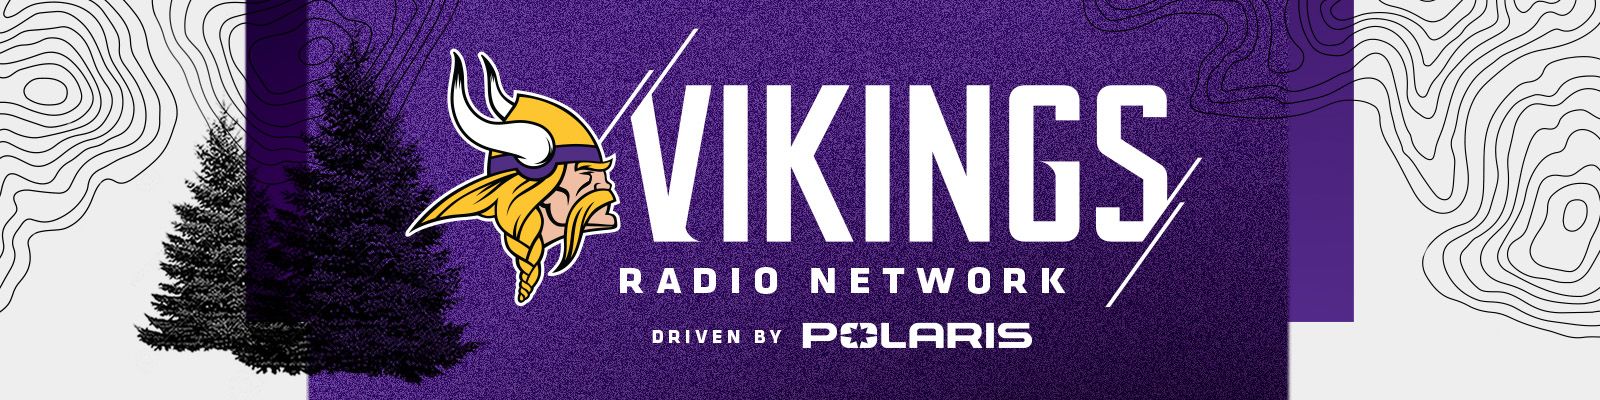 vikings radio live